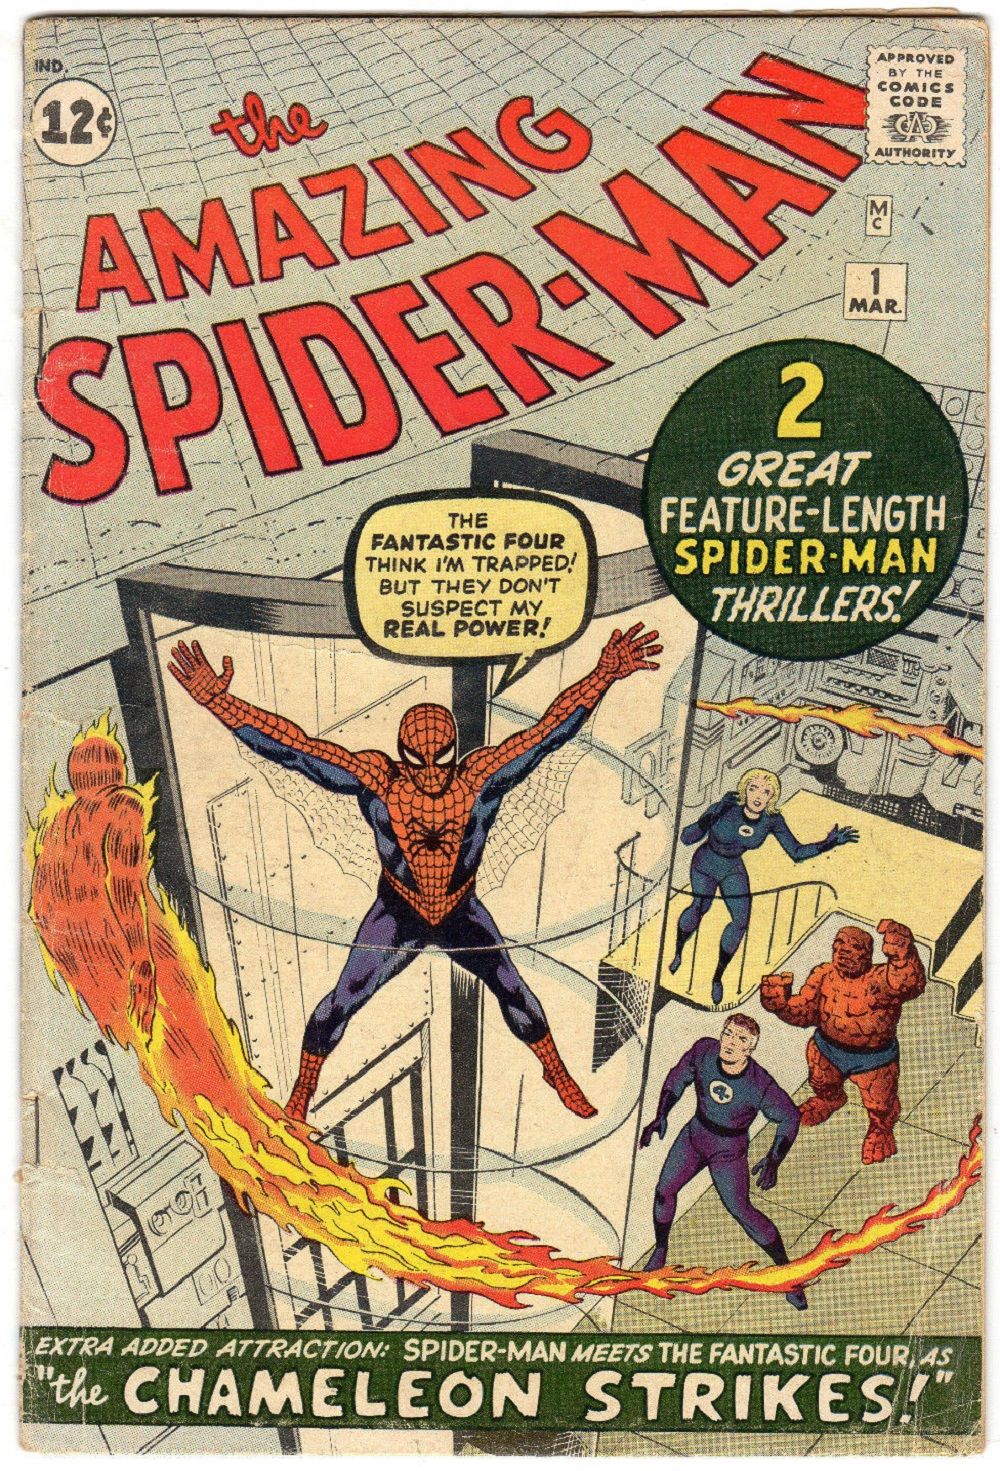 Amazing Spider-Man 1